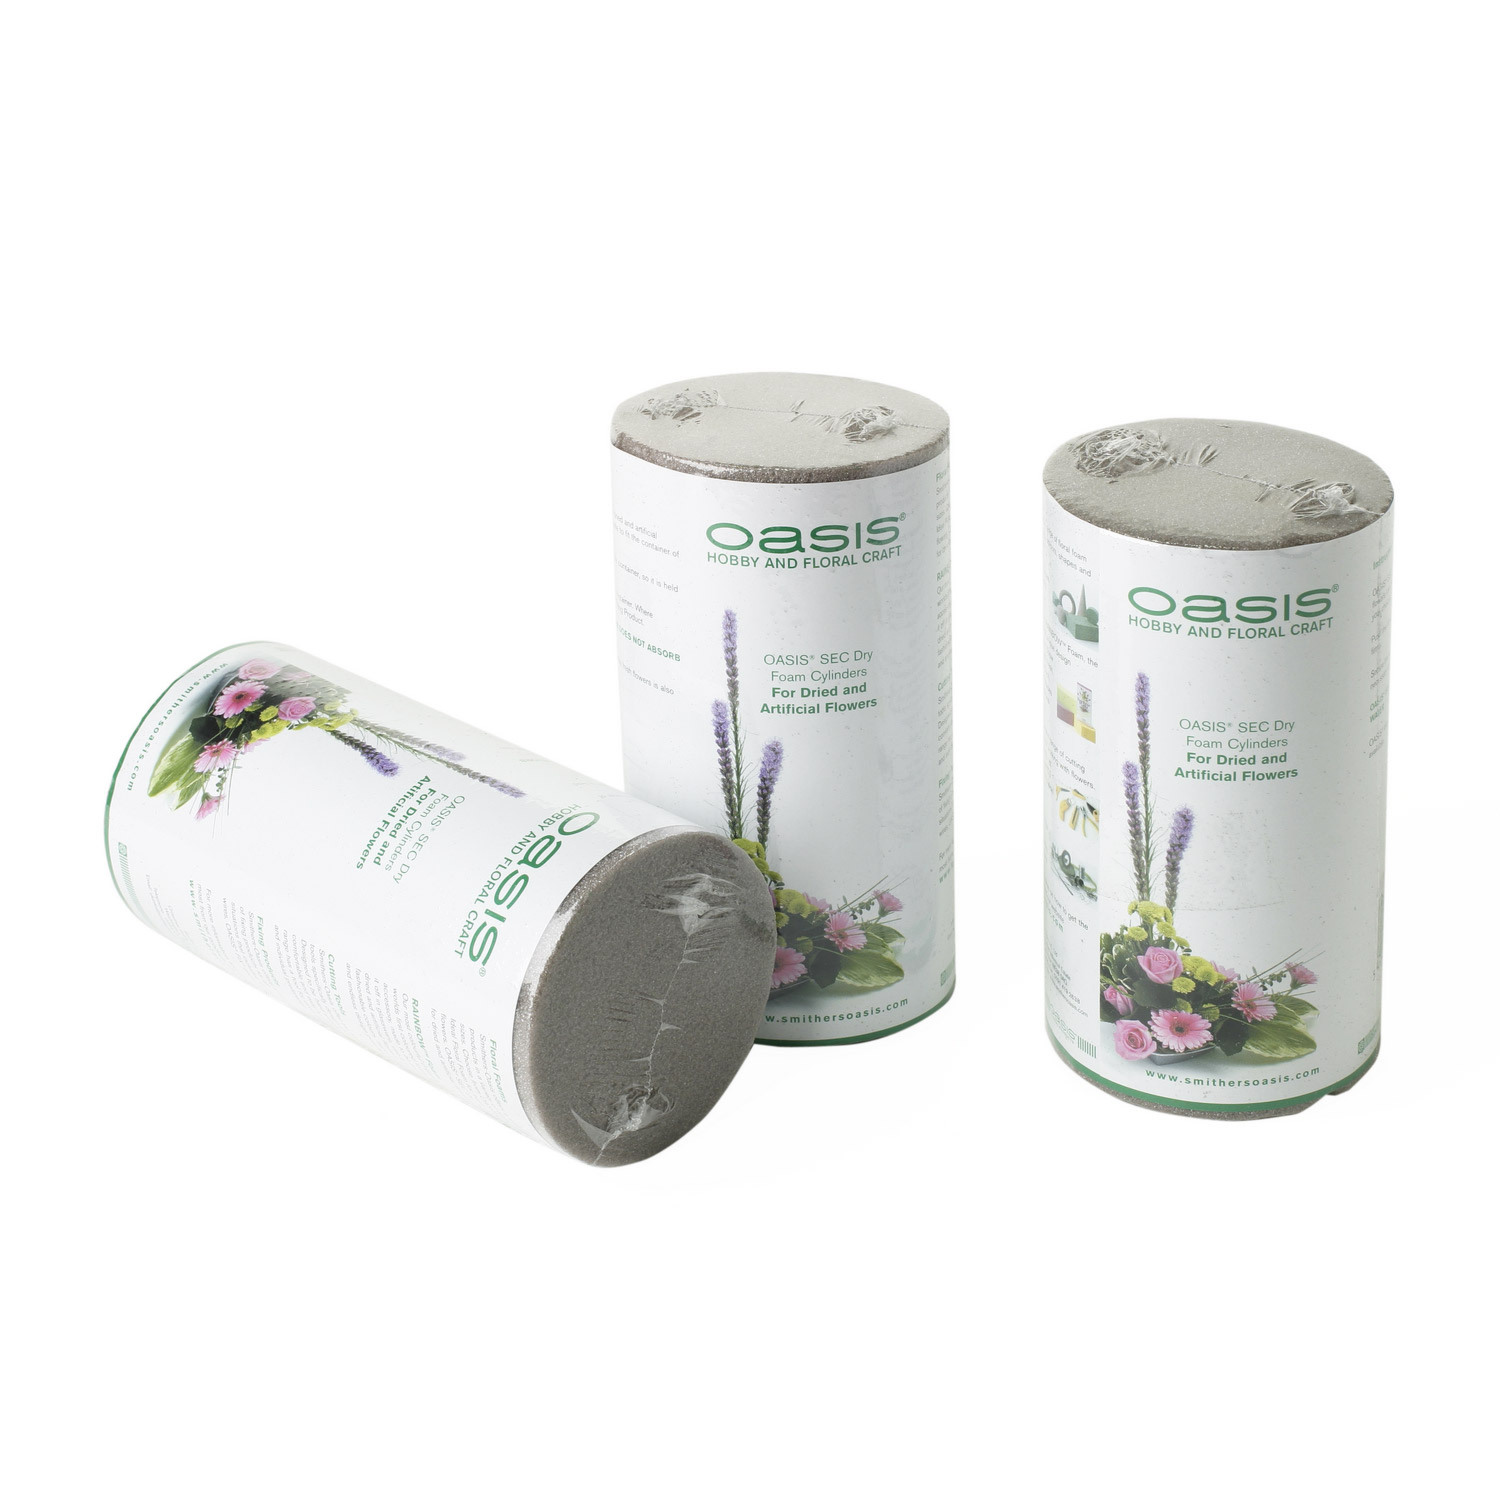 Oasis Floral Dry Foam Cylinder Image